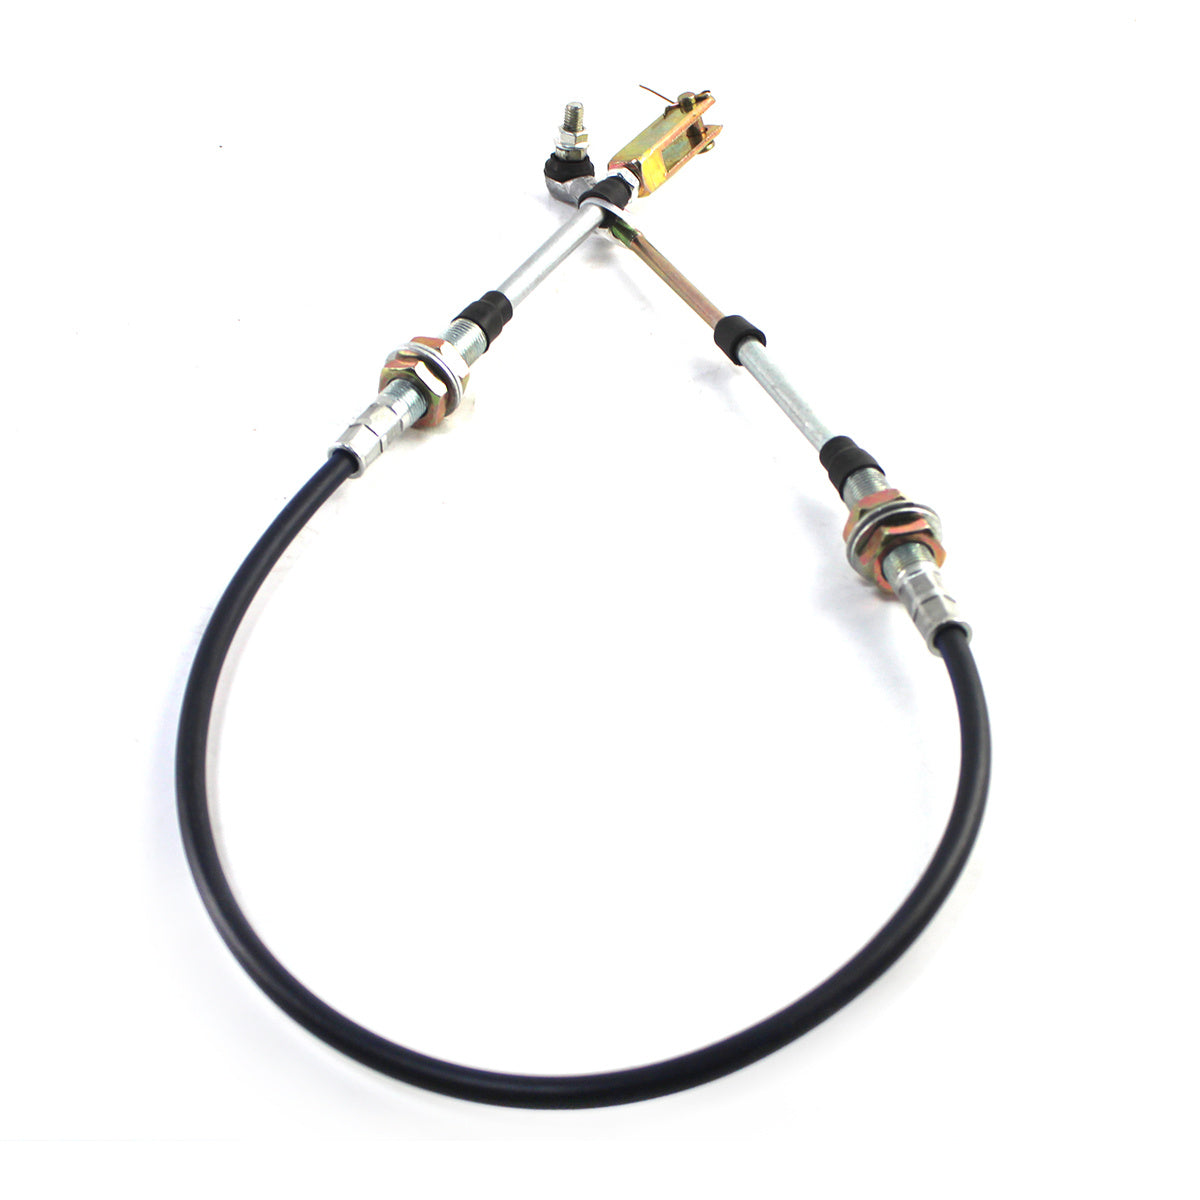 362-43-34150 Throttle Cable for Komatsu D41P-6 D41E-6 Excavator - Sinocmp